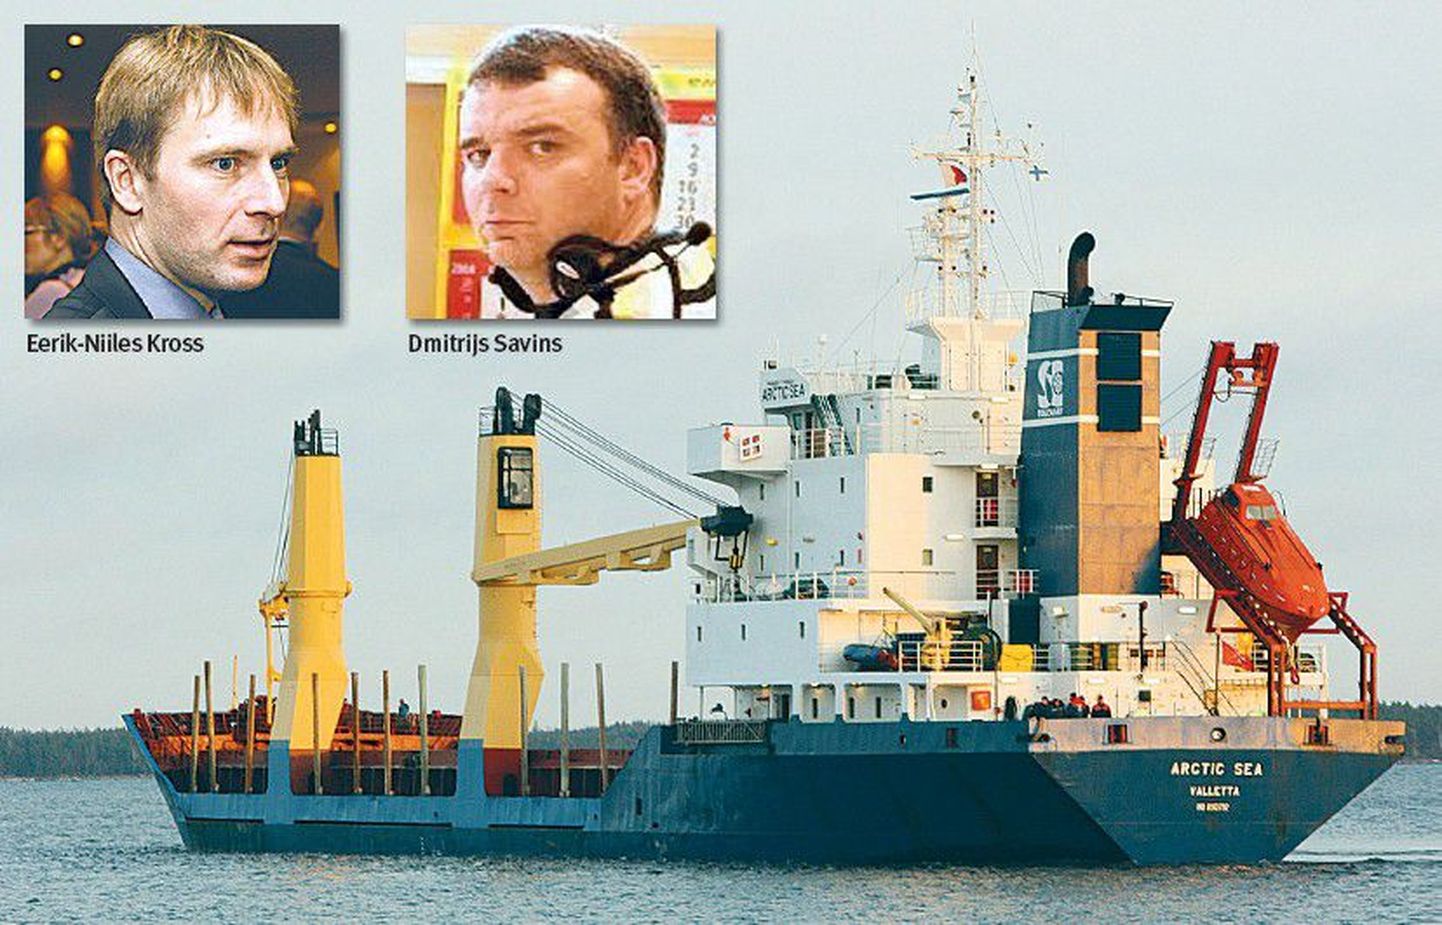 Eerik-Niiles Krossi ettevõte üüris paari aasta eest Dmitrijs Savinsi juhitud firmale kontorit. Praegu süüdistatakse Savinsit kaubalaeva Arctic Sea kaaperdamises.